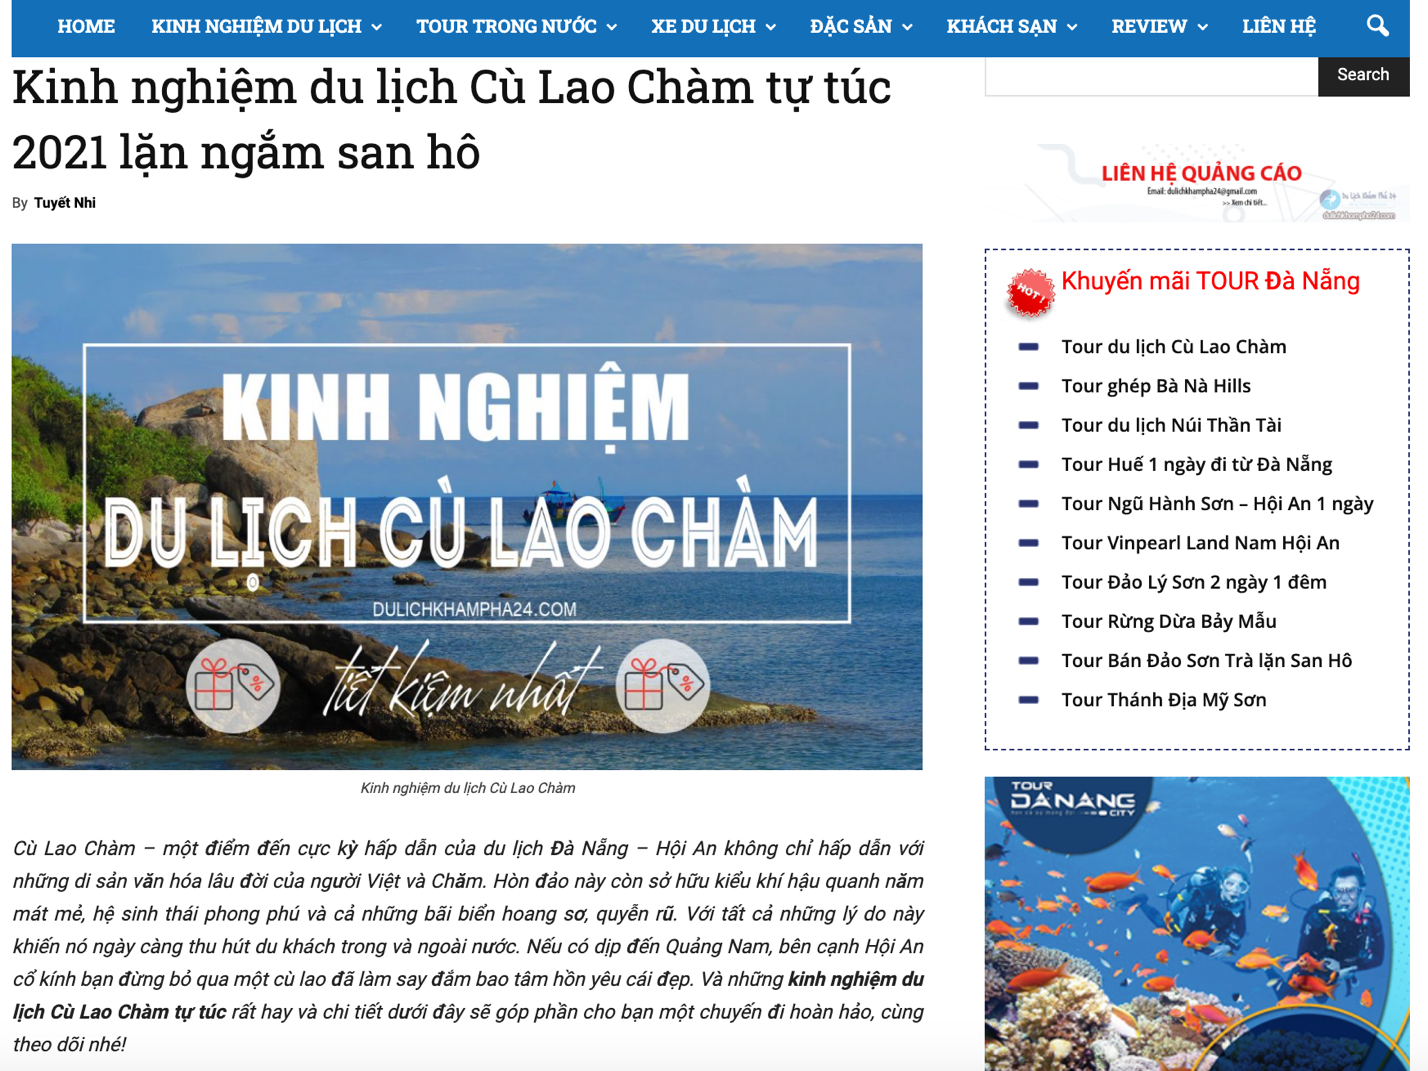 Dulichkhampha24.com chia sẻ kinh nghiệm du lịch Cù Lao Chàm chi tiết nhất